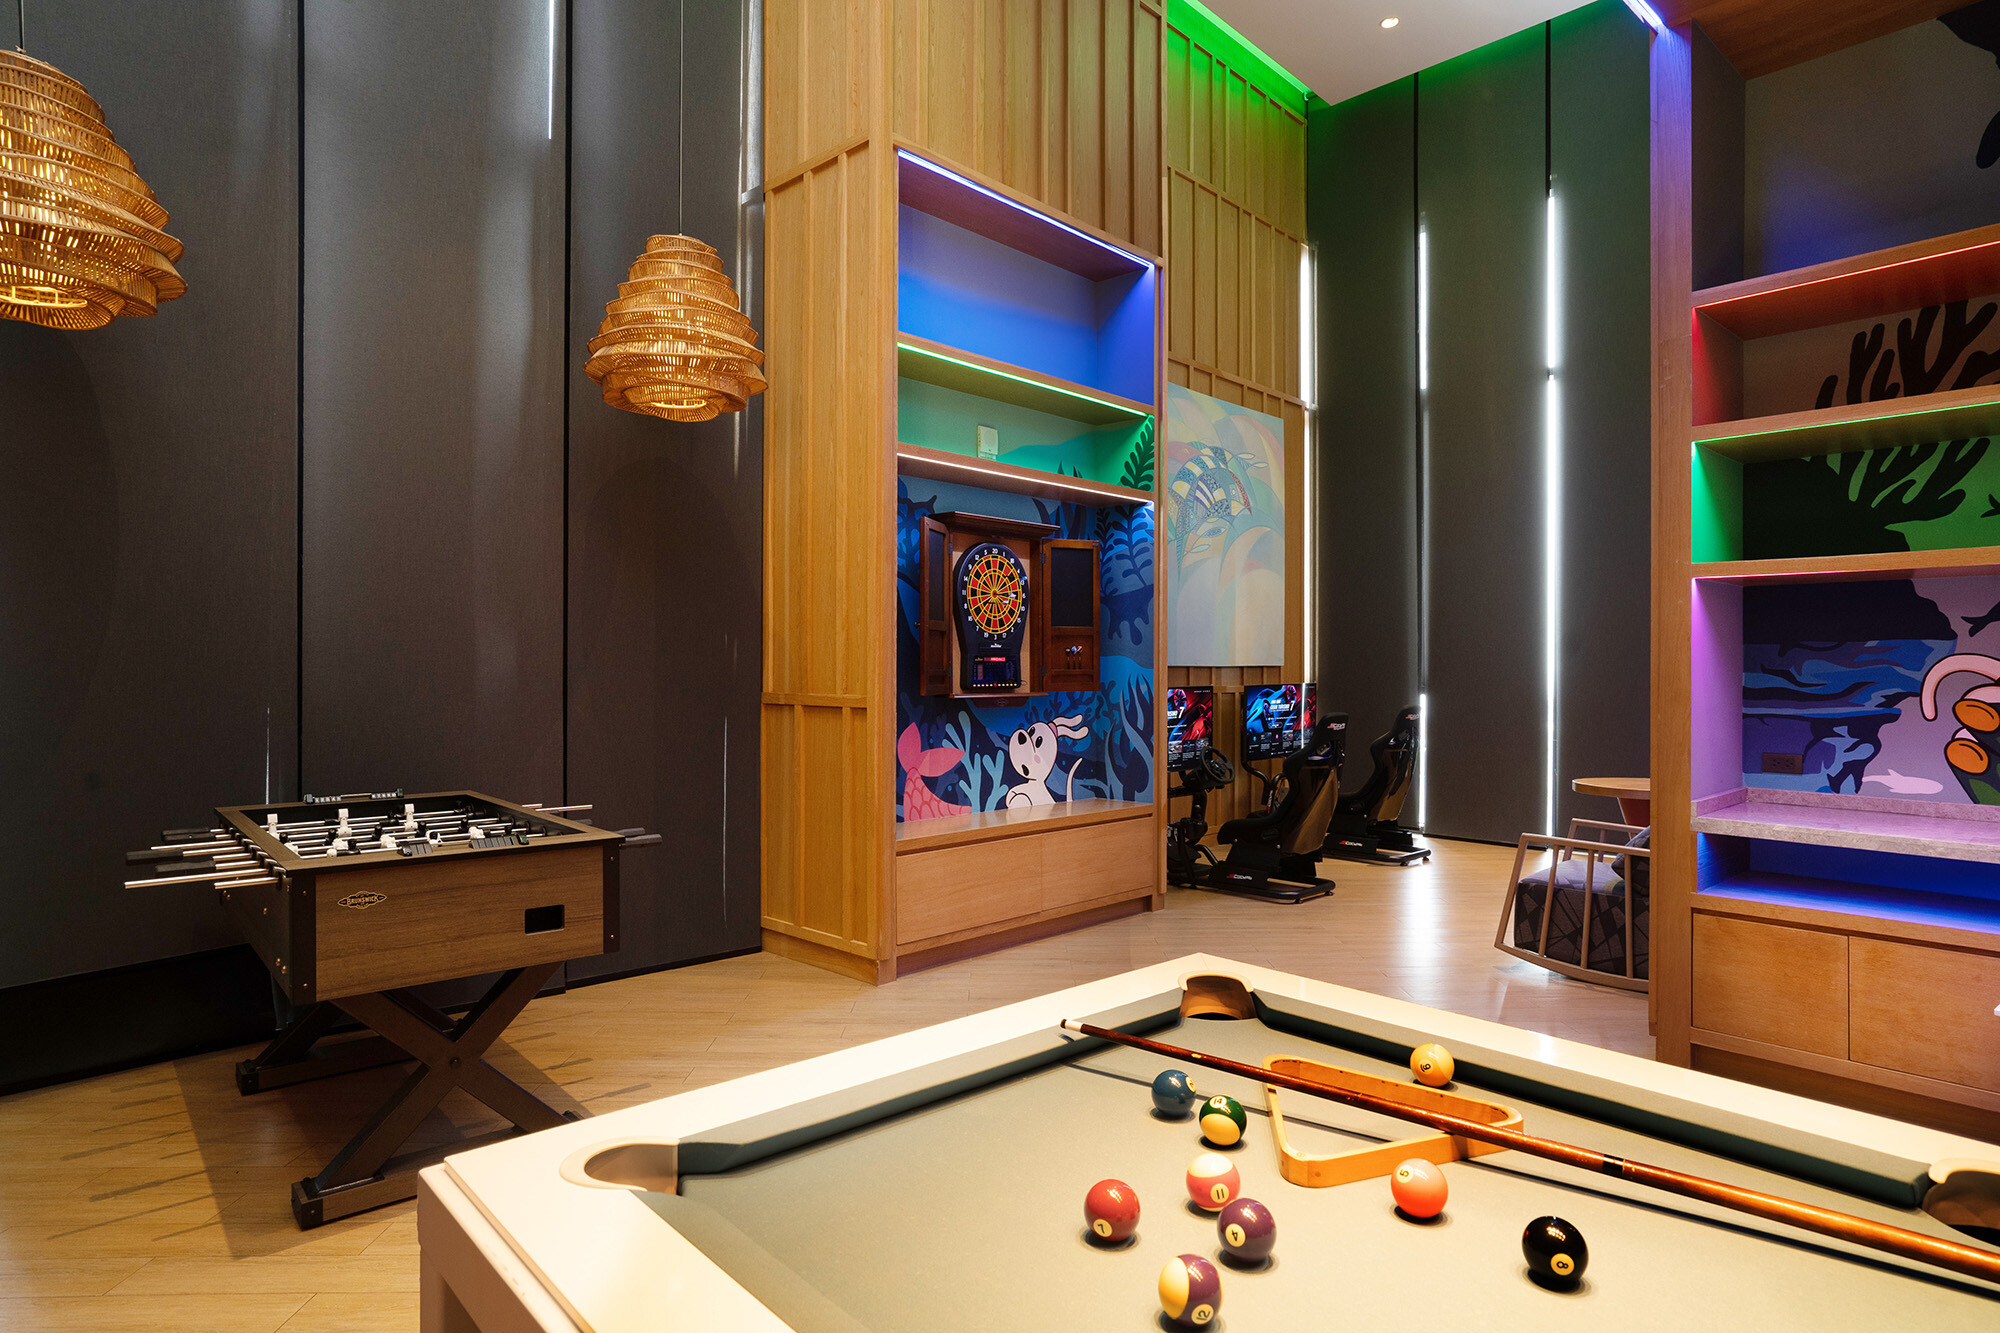 เปิดตัว "วานา นาวา เกมส์ รูม" พื้นที่ความสนุกแห่งใหม่สำหรับทุกคนในครอบครัวที่โรงแรมฮอลิเดย์ อินน์ วานา นาวา หัวหิน